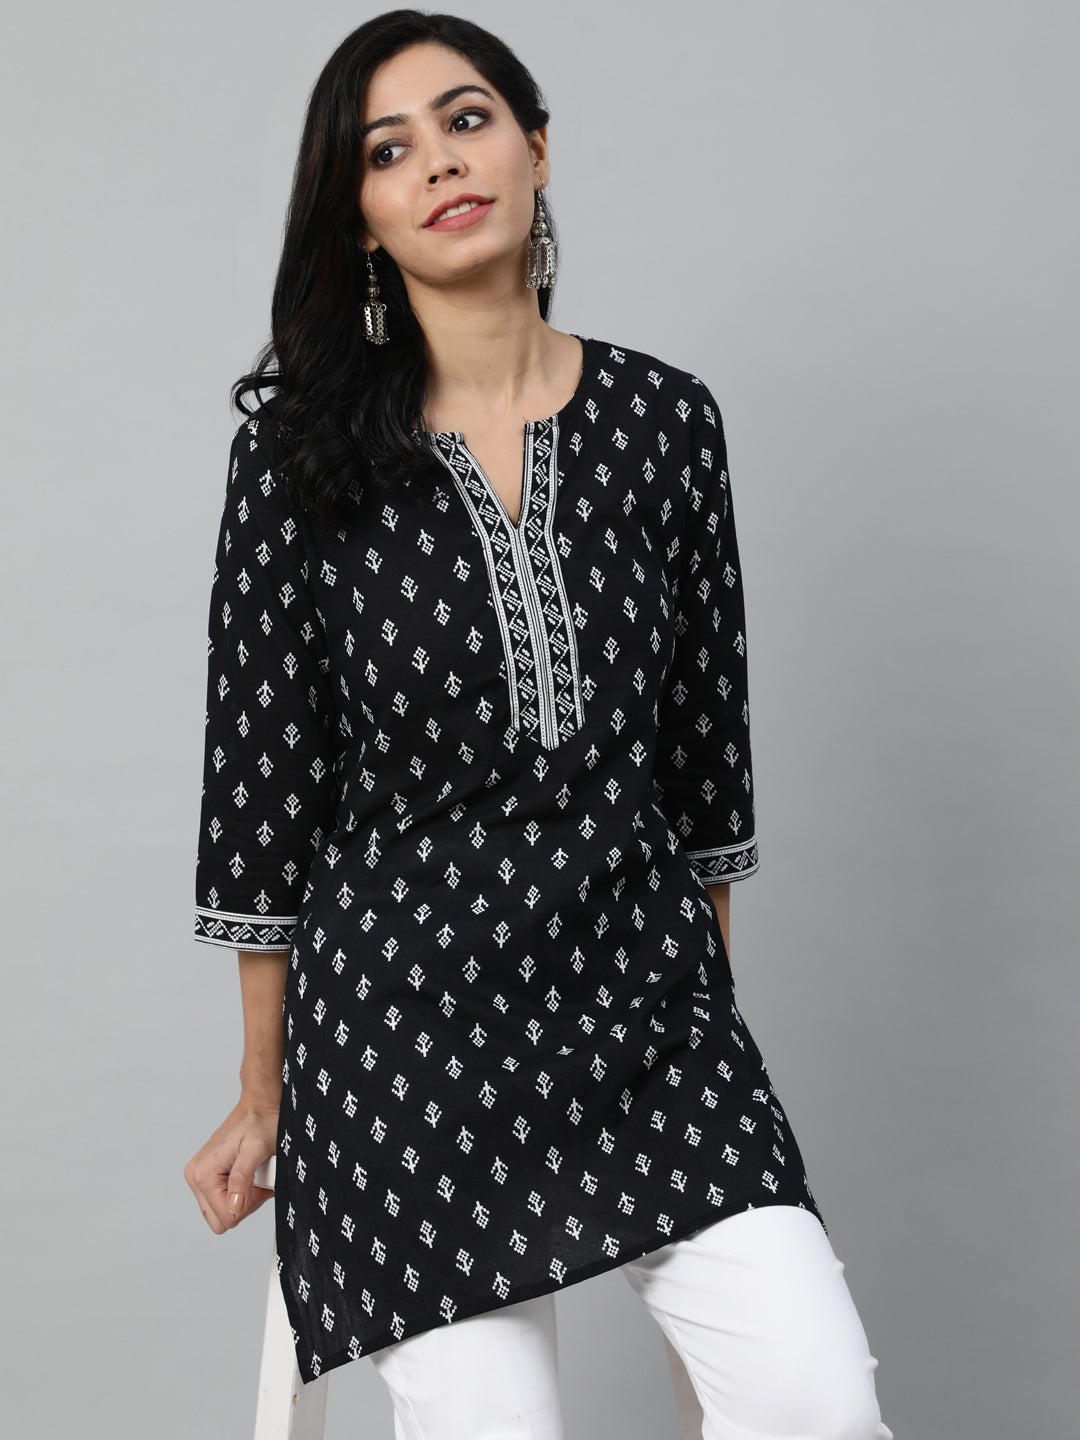 Women's Black & White Printed Cotton Tunic - Nayo Clothing USA